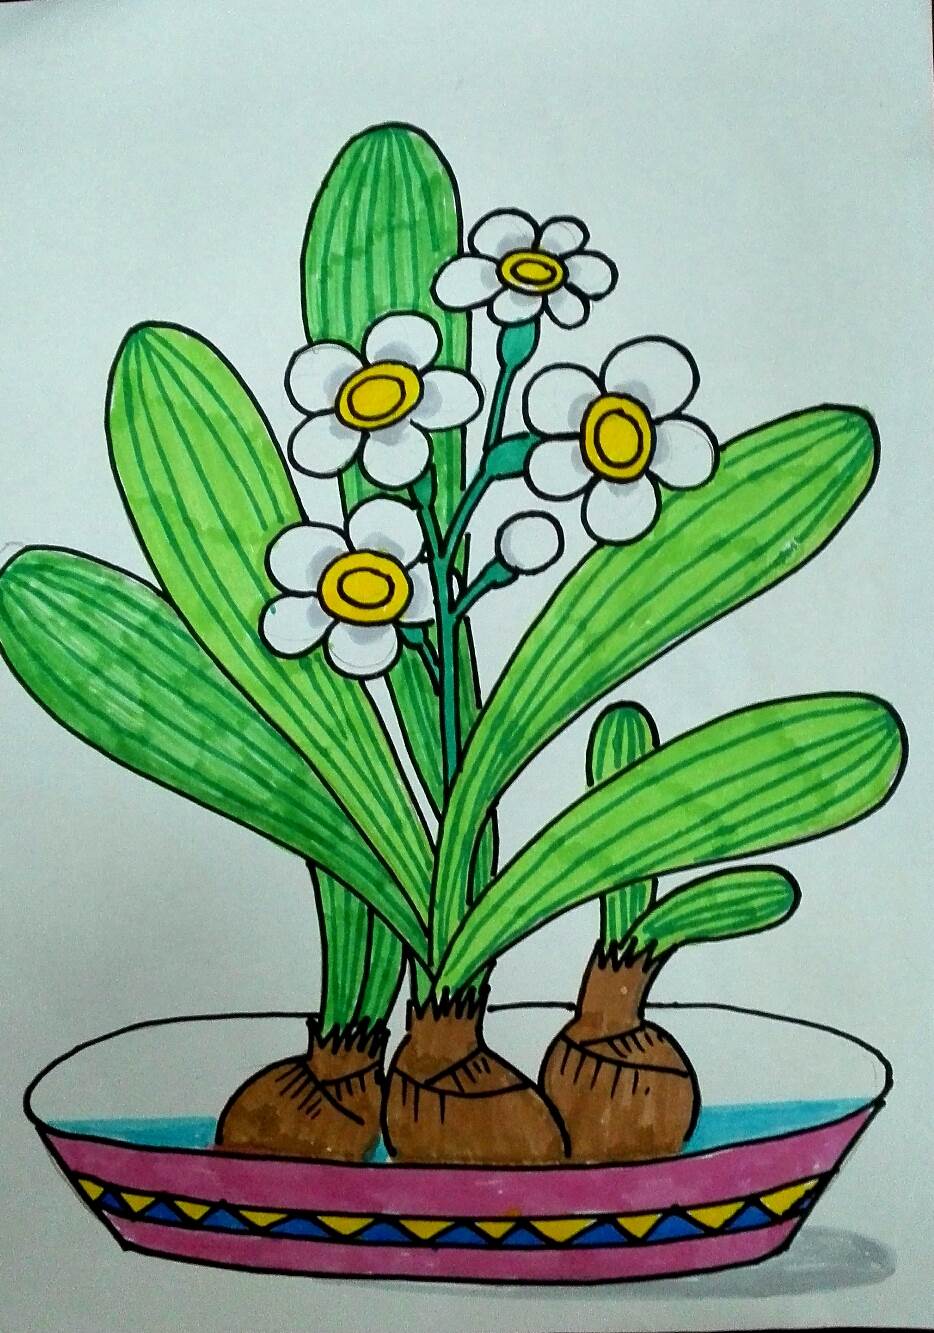 身边的植物画画简单图片